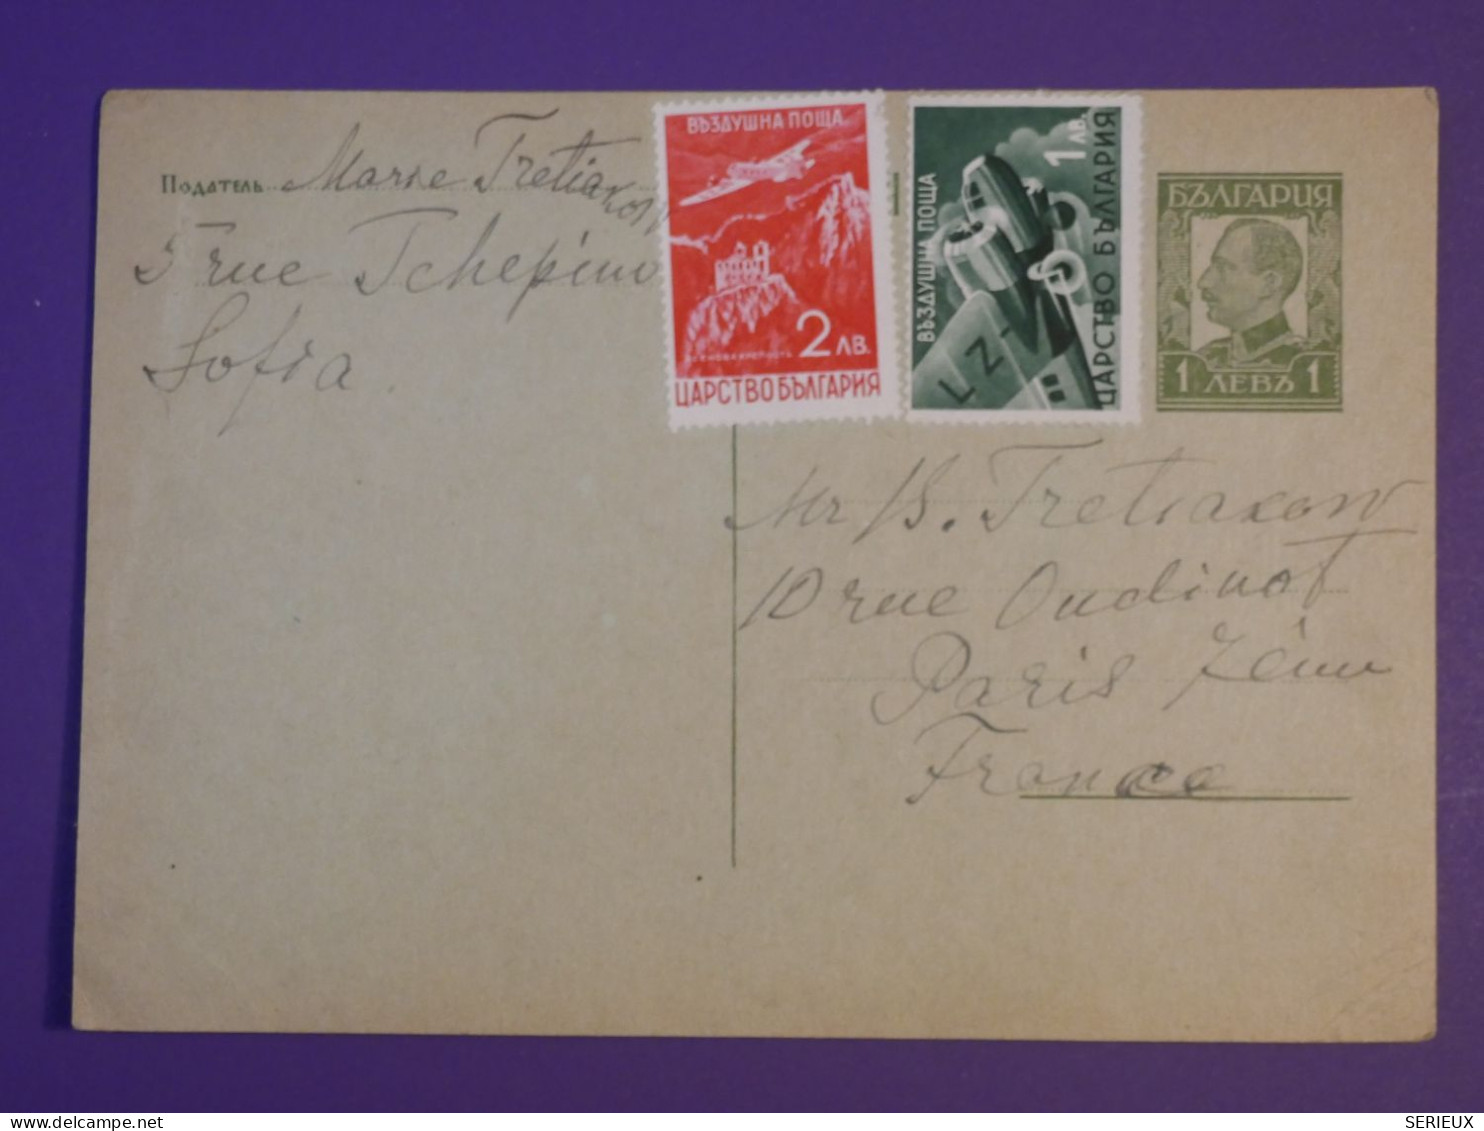 DB0  BULGARIE  BELLE CARTE ENTIER   1941 SOFIA A   PARIS FRANCE  ++ AFF. INTERESSANT++++ - Cartes Postales